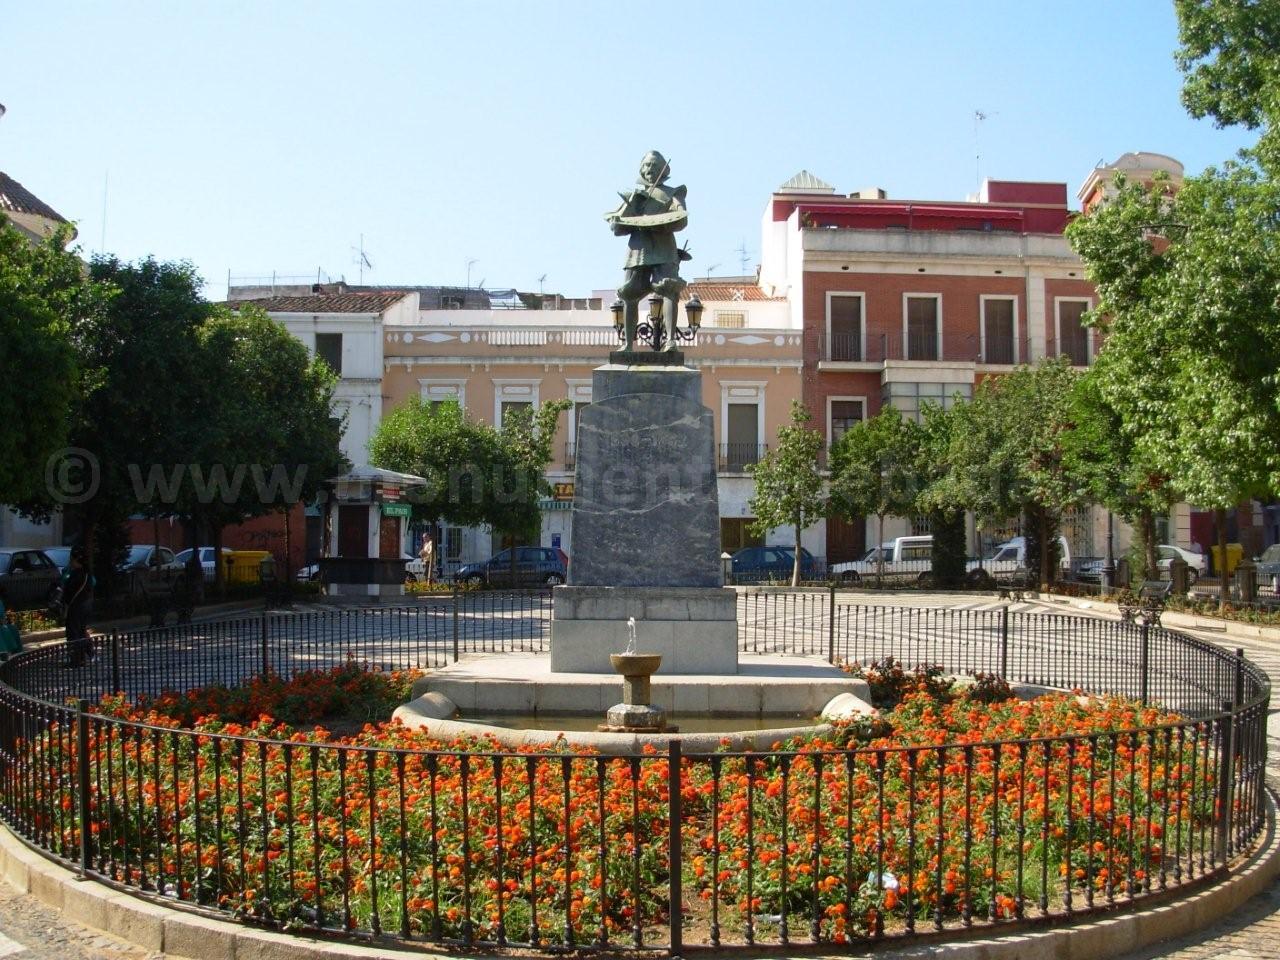 Monumento a Zurbarán, Plaza de Cervantes (Badajoz)